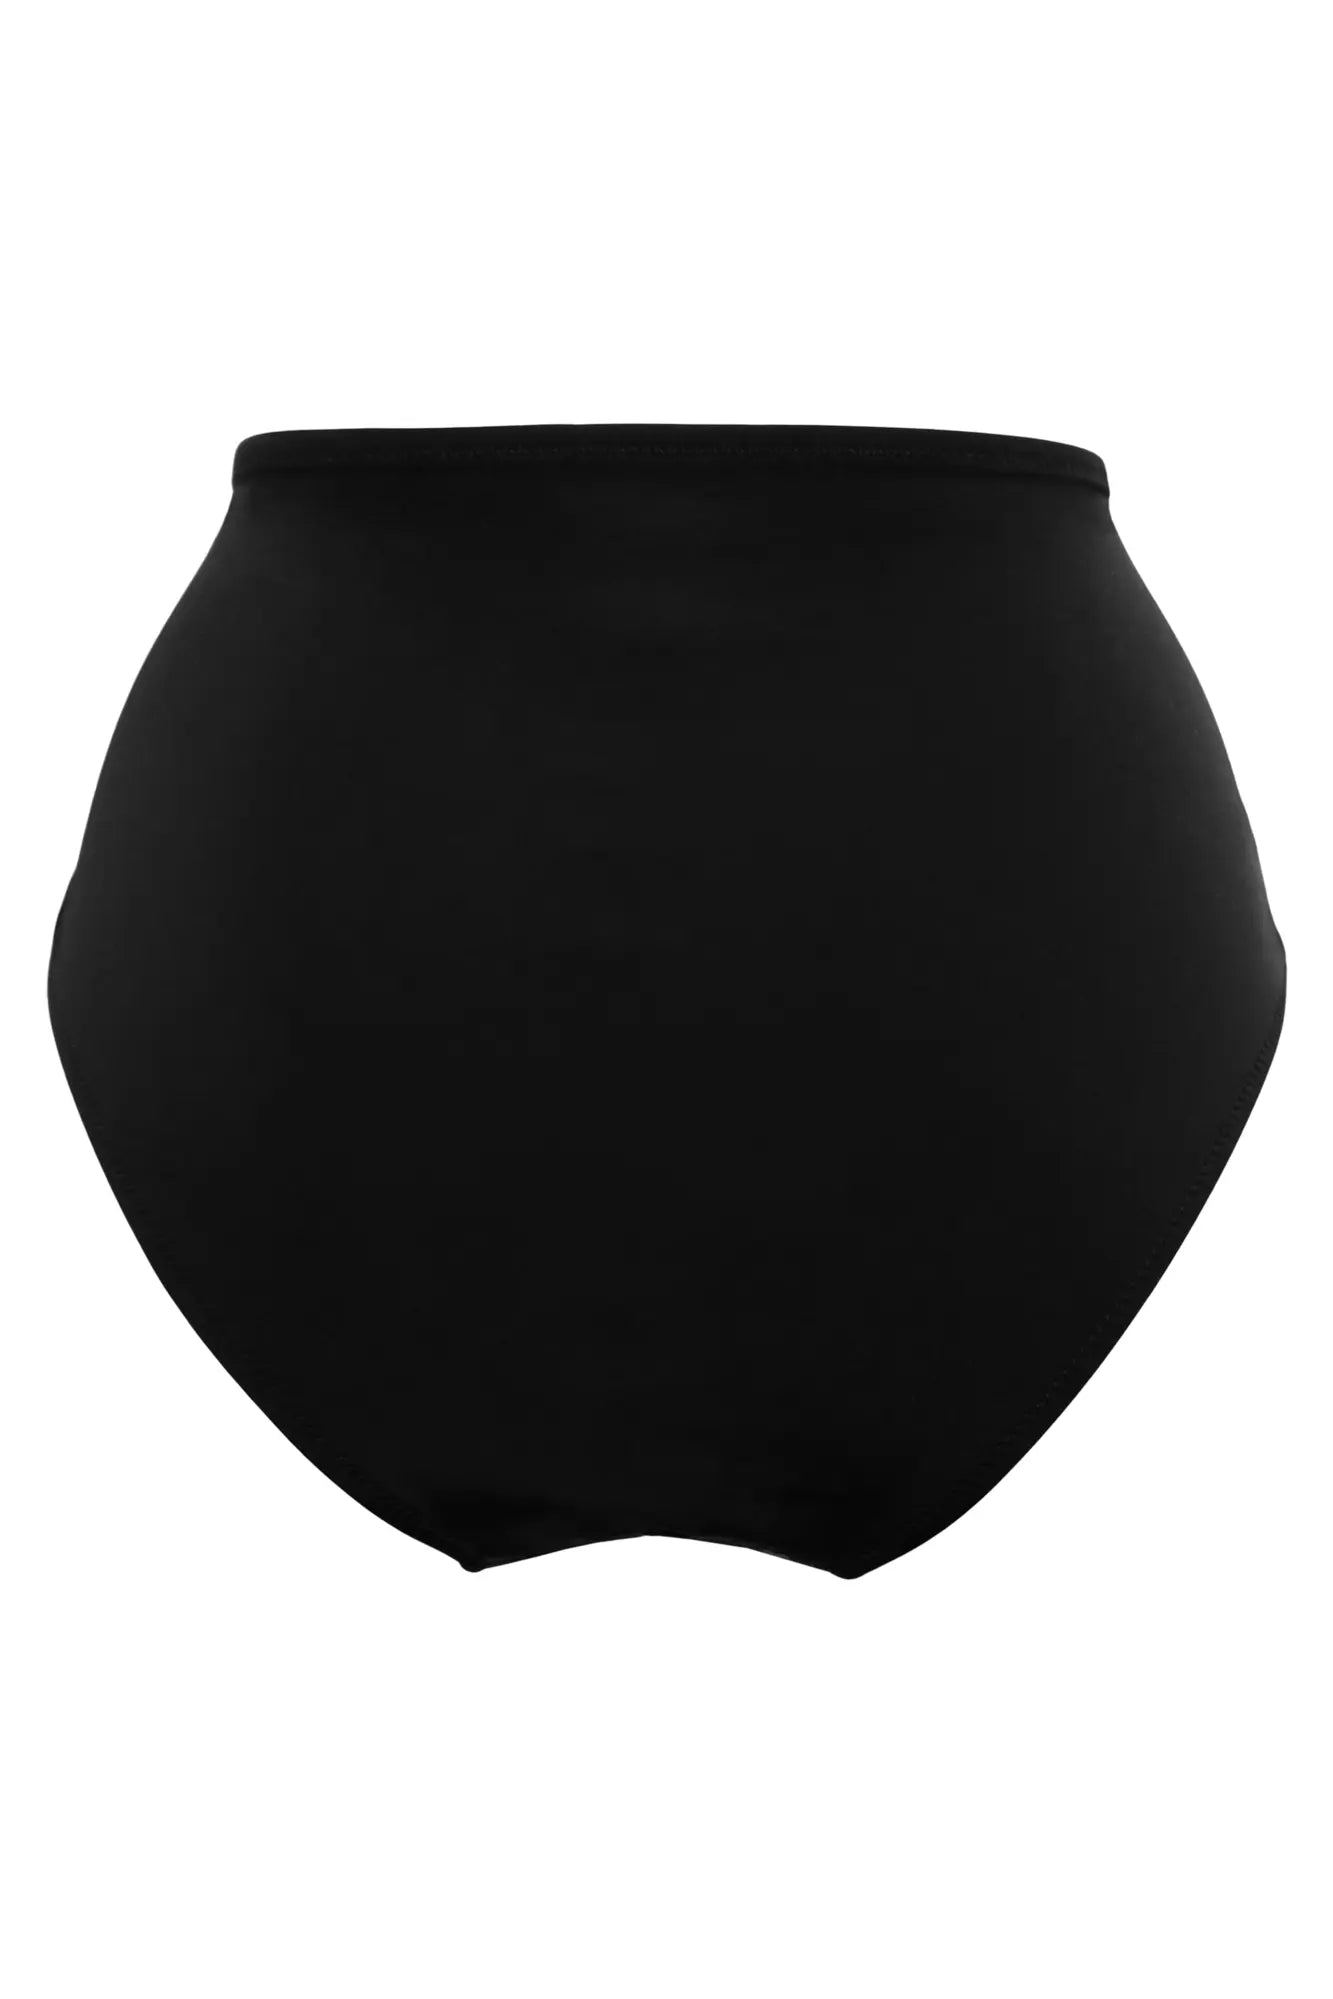 Santa Cruz Super High Waist Bikini Brief In Black - Pour Moi